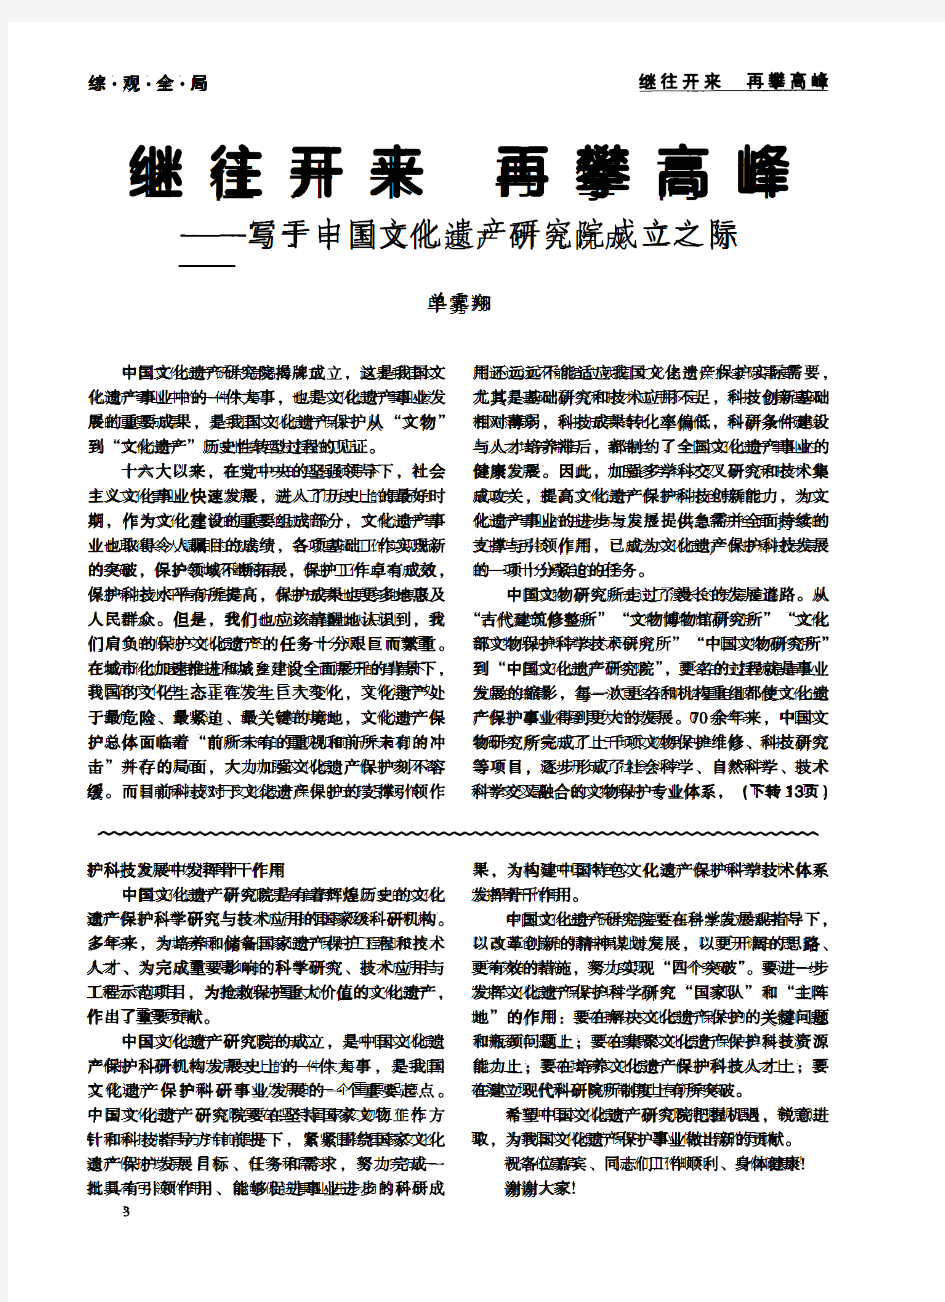 在中国文化遗产研究院揭牌仪式上的致辞-论文